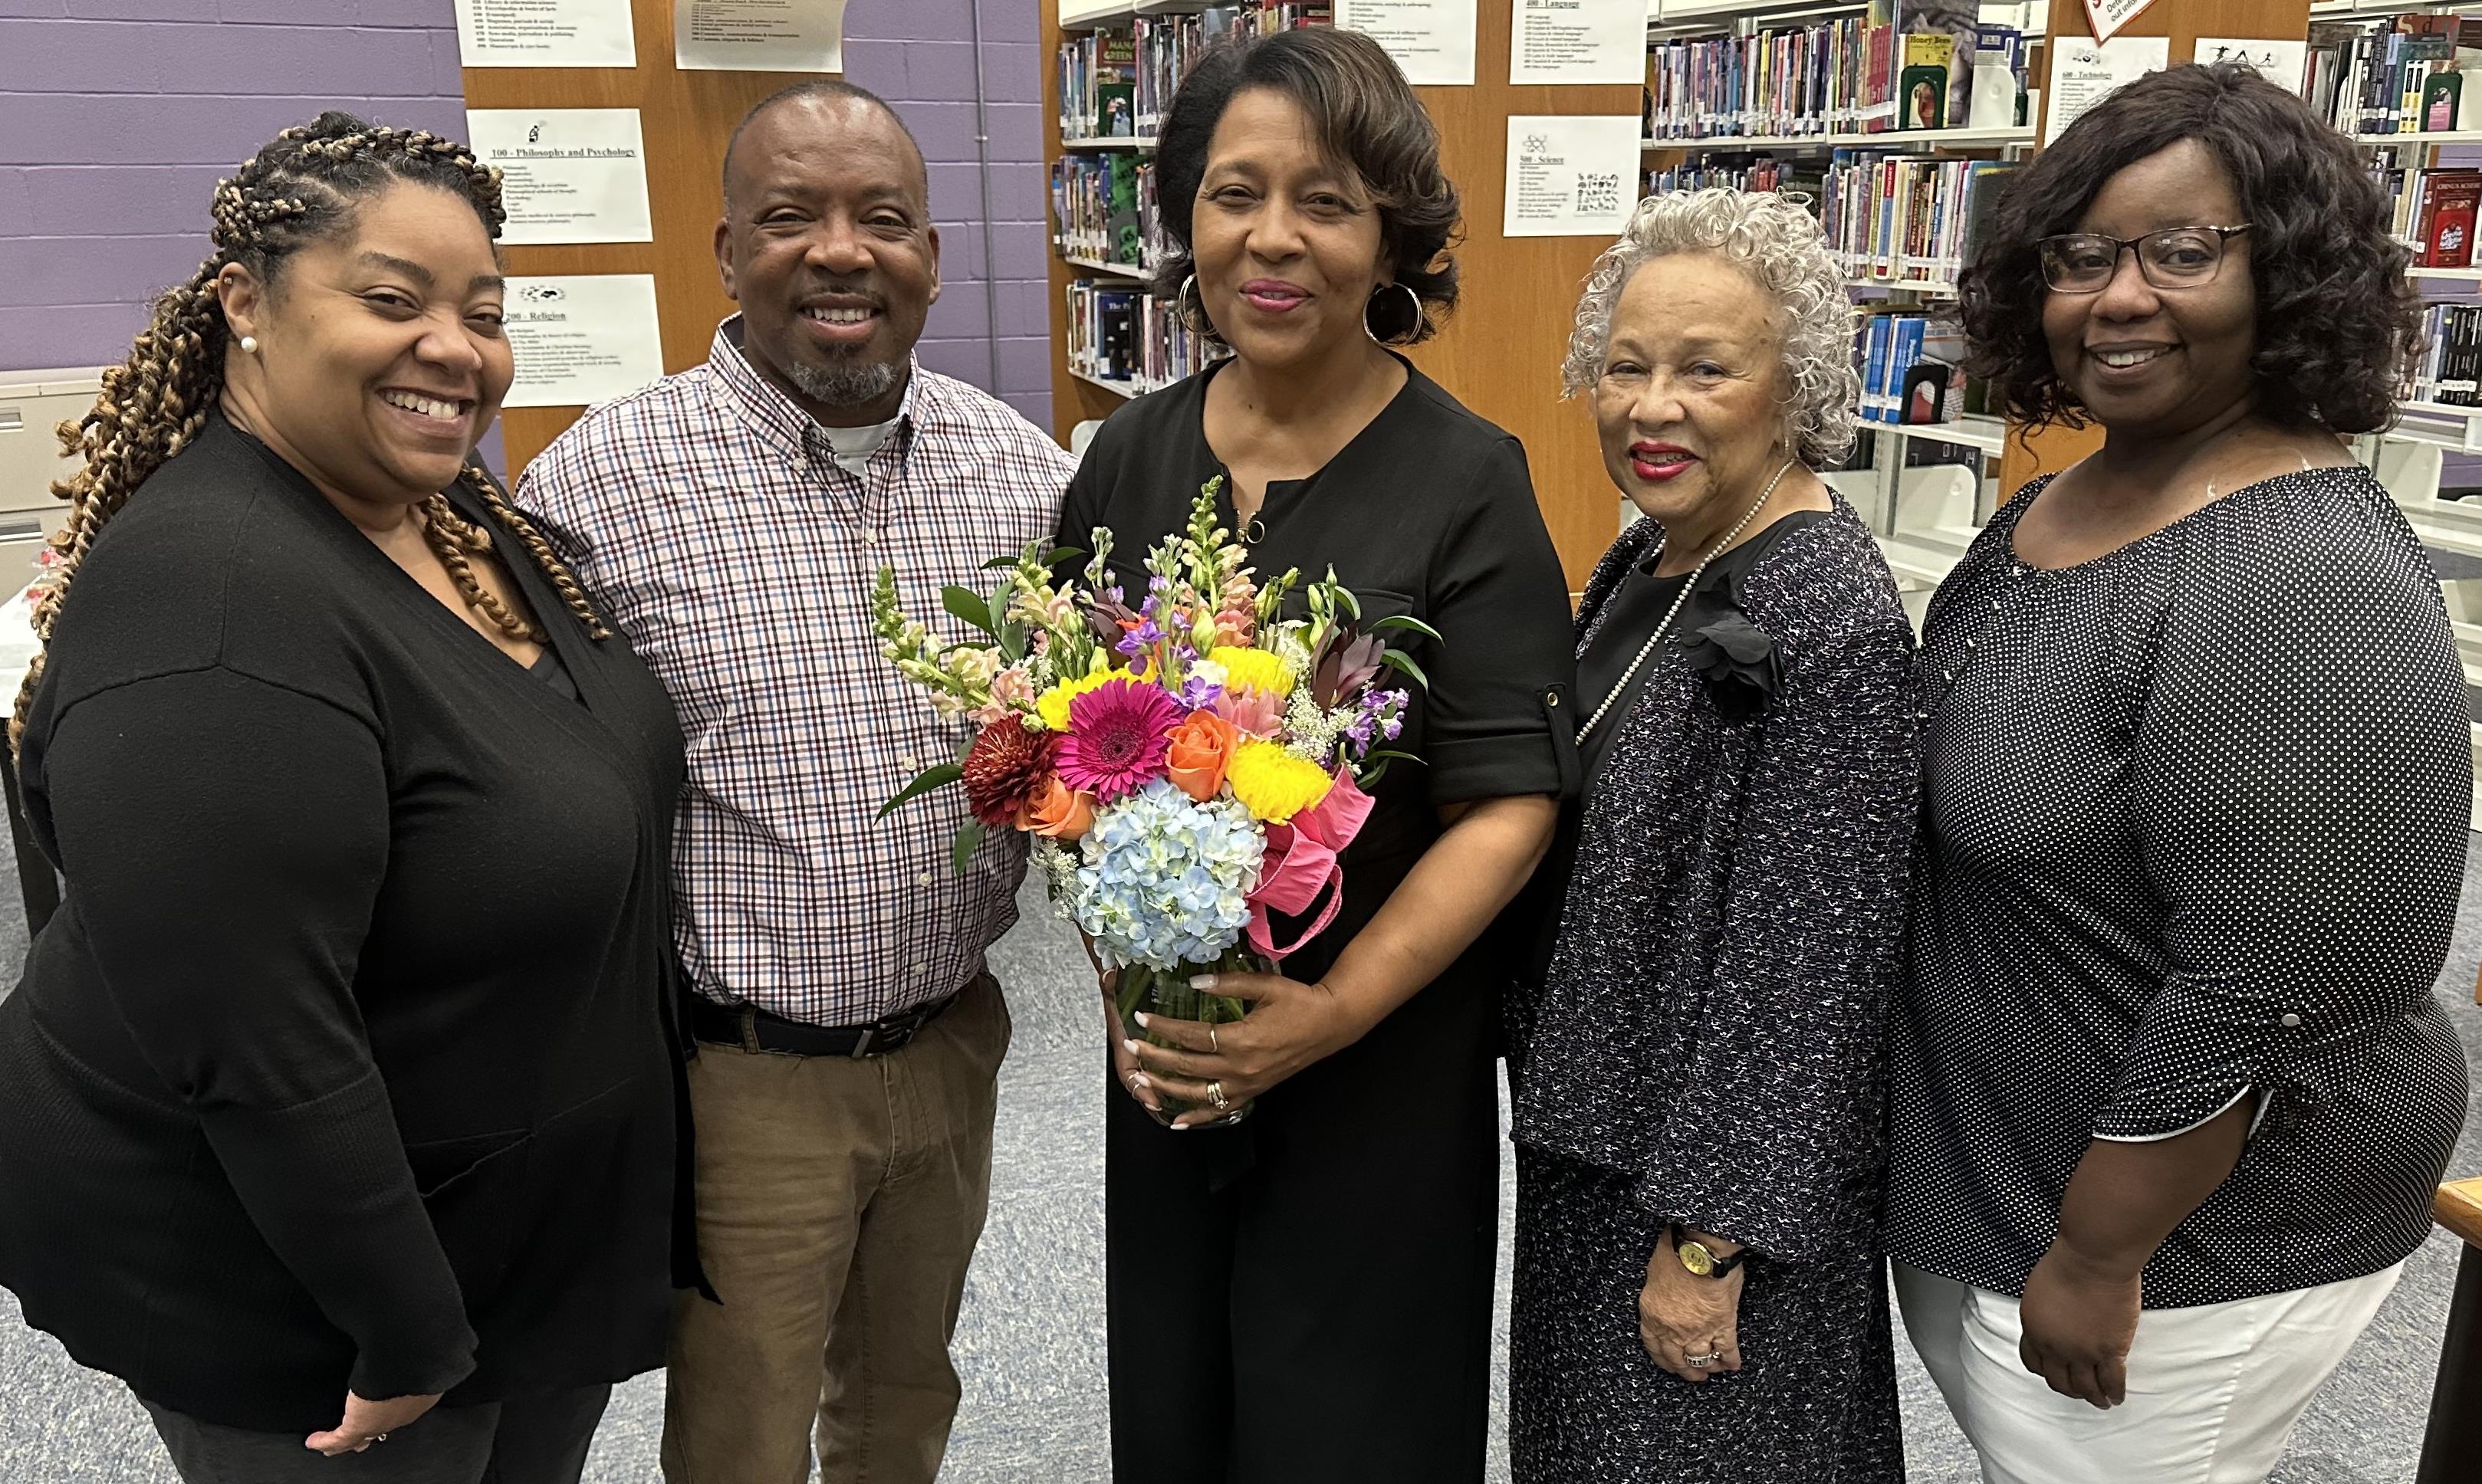 School district leaders honored